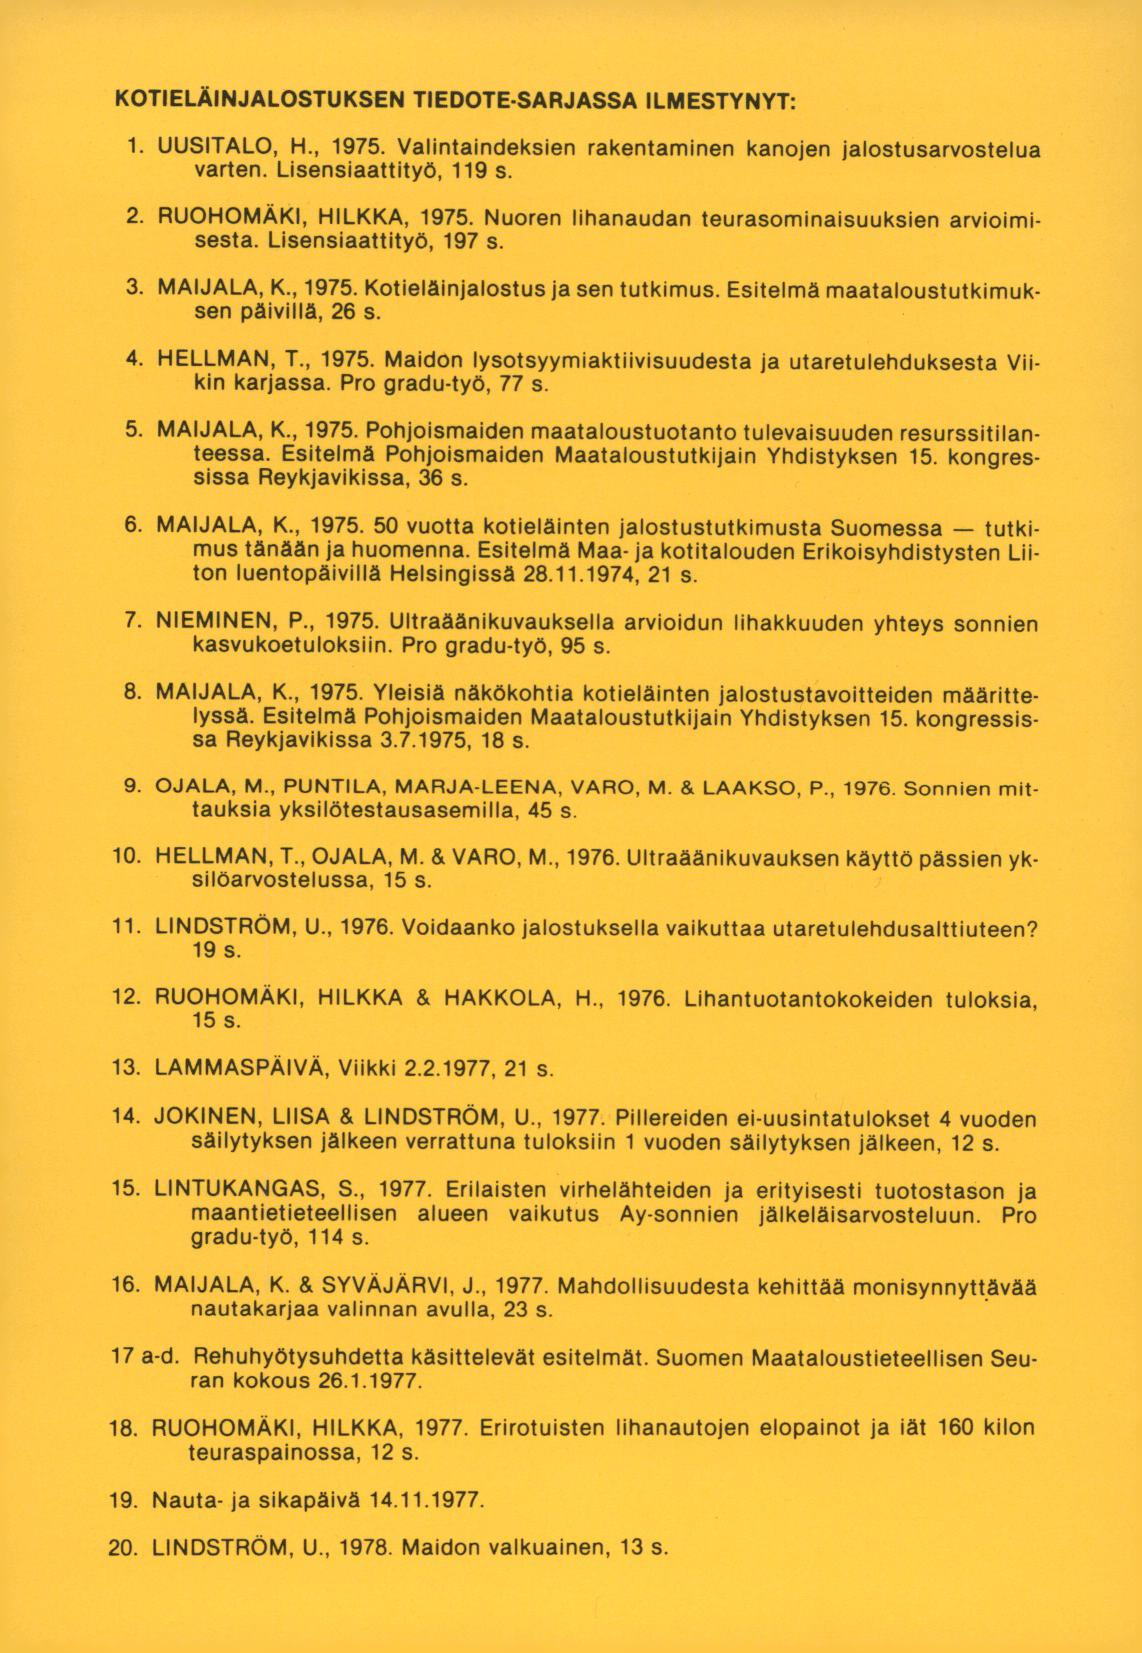 KOTIELÄINJALOSTUKSEN TIEDOTE SARJASSA ILMESTYNYT: UUSITALO, H., 1975. Valintaindeksien rakentaminen kanojen jalostusarvostelua varten. Lisensiaattityö, 119 s. RUOHOMÄKI, HILKKA, 1975.